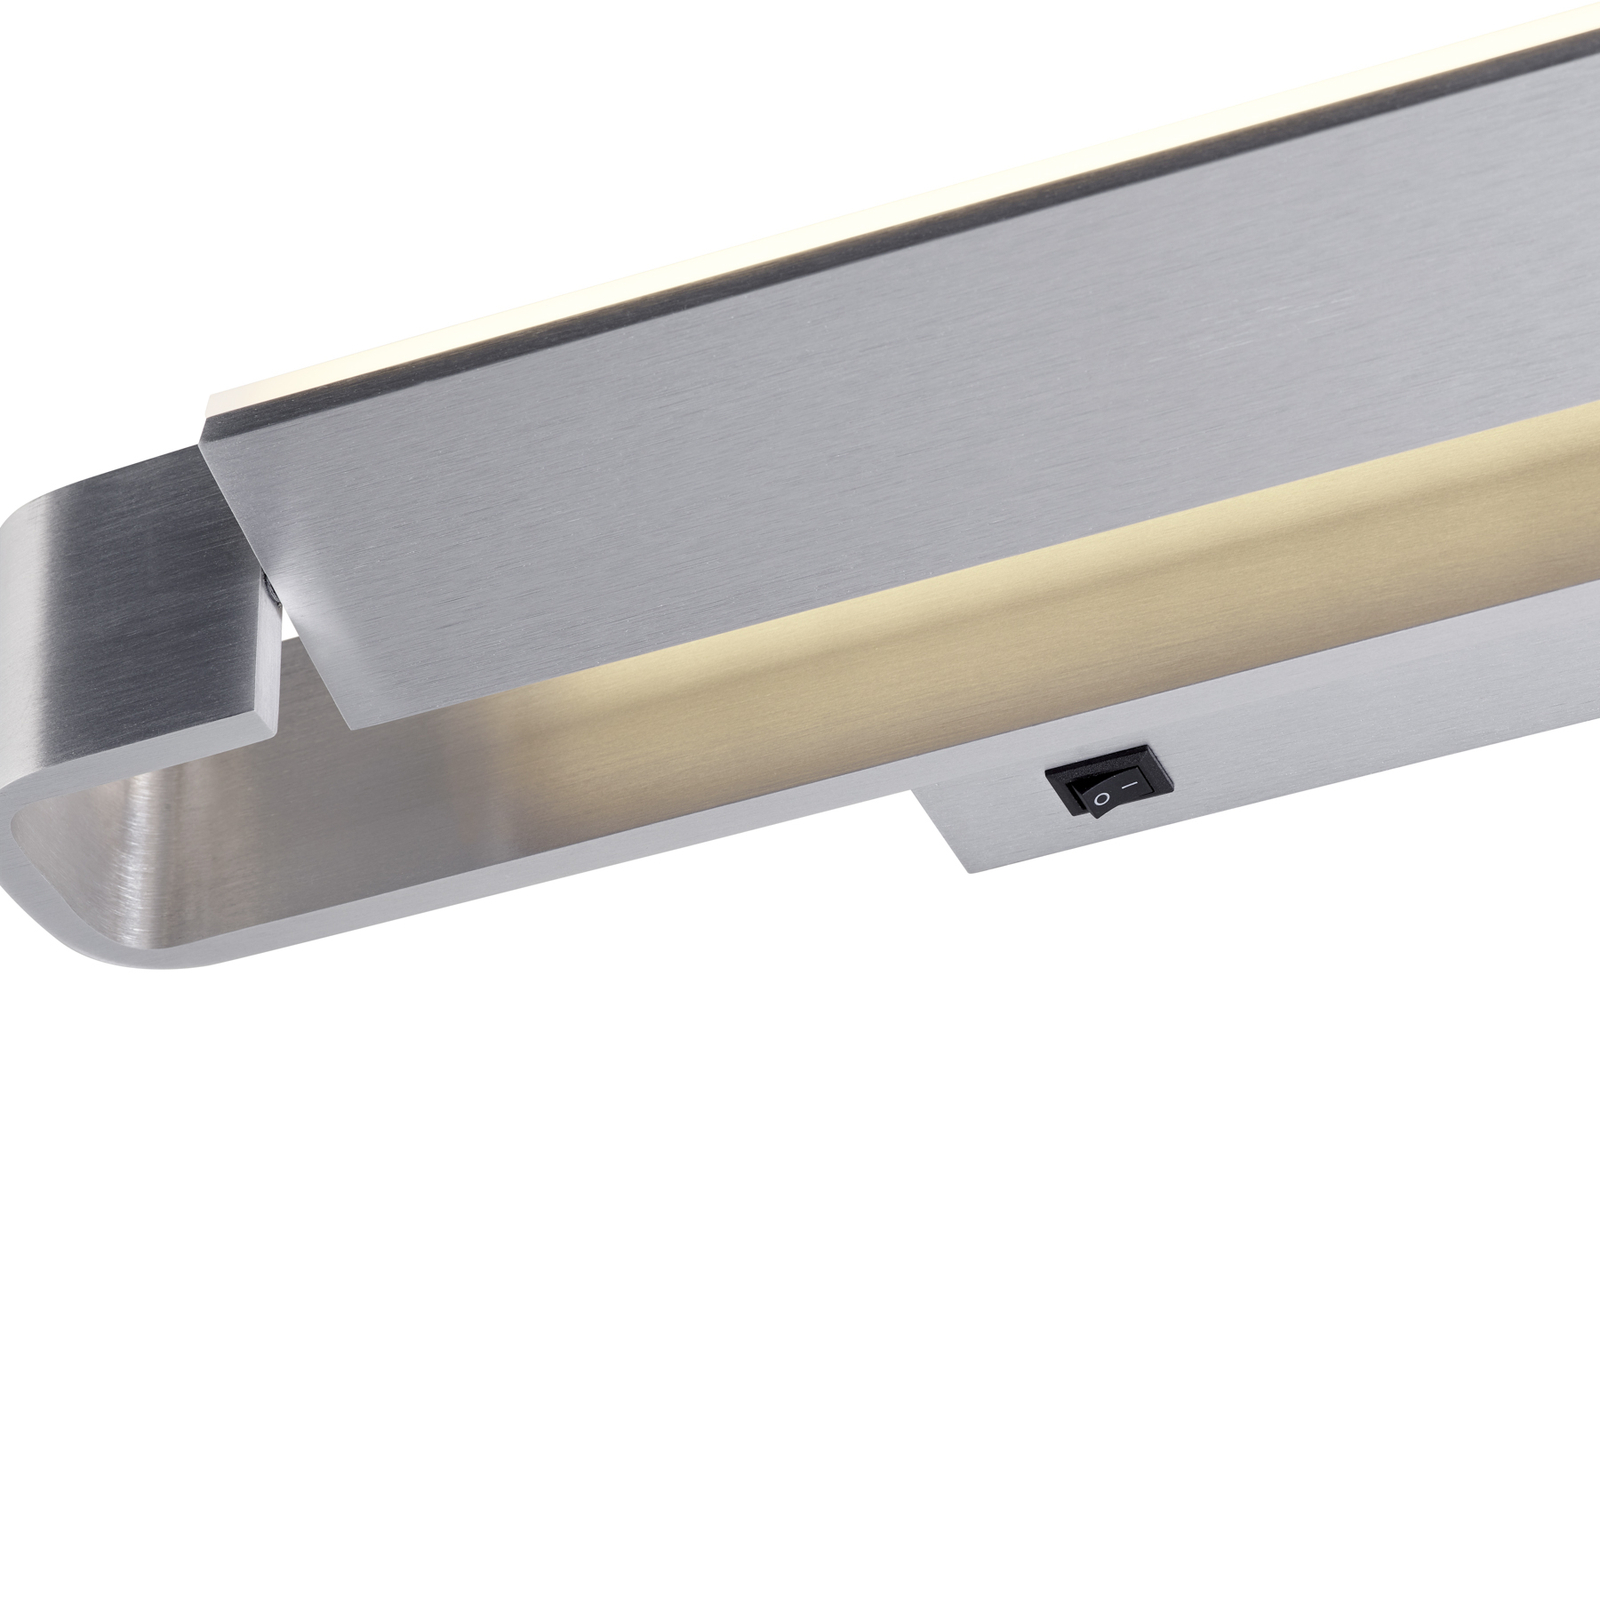 Kinkiet LED Box, obrotowy, aluminium anodowane